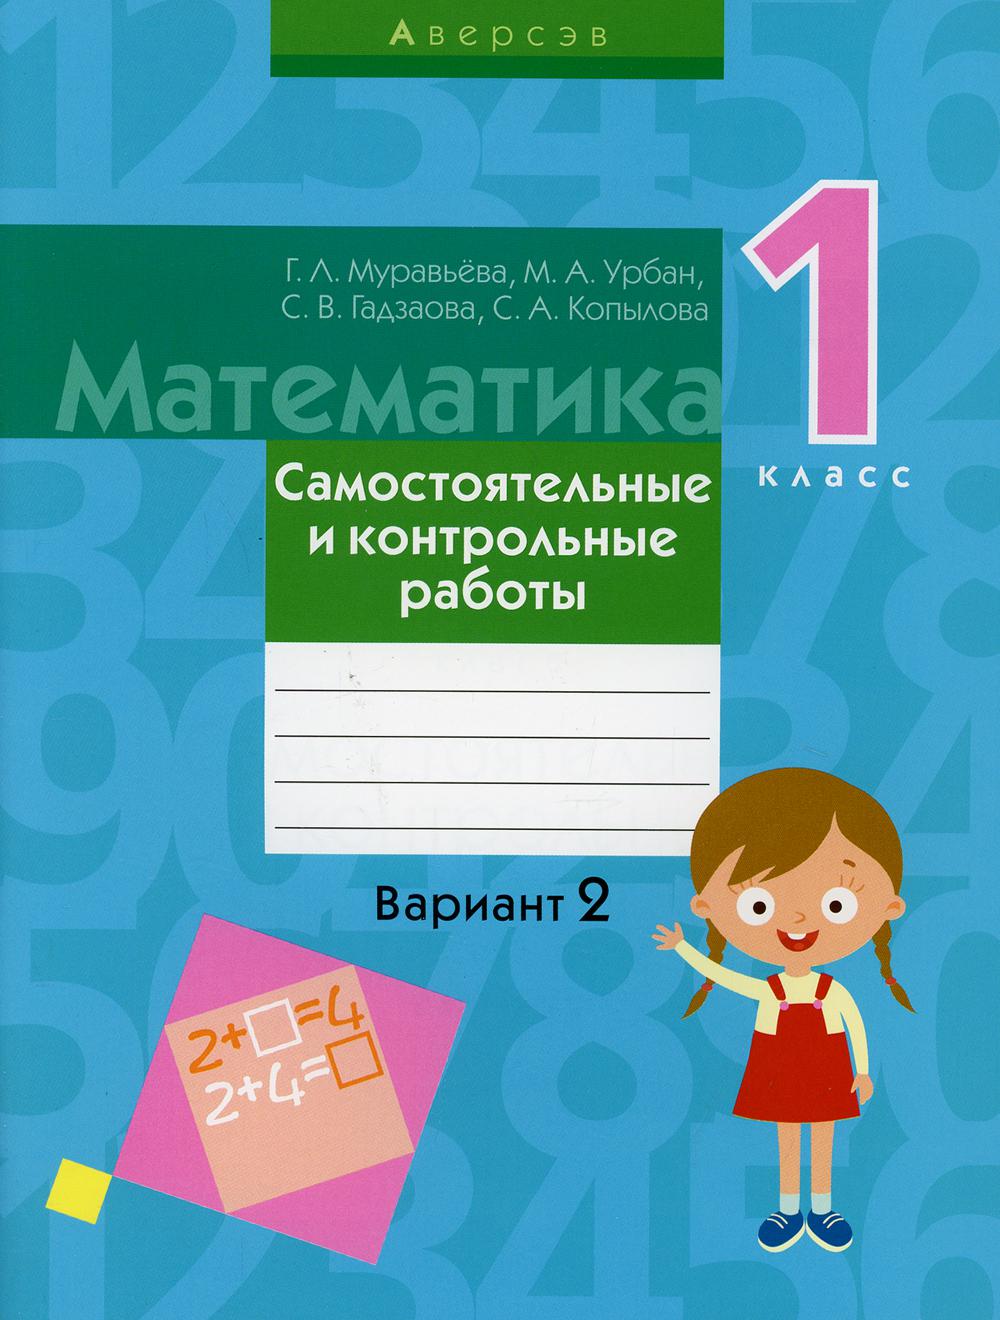 

Книга Математика. 1 класс: самостоятельные и контрольные работы: вариант 2